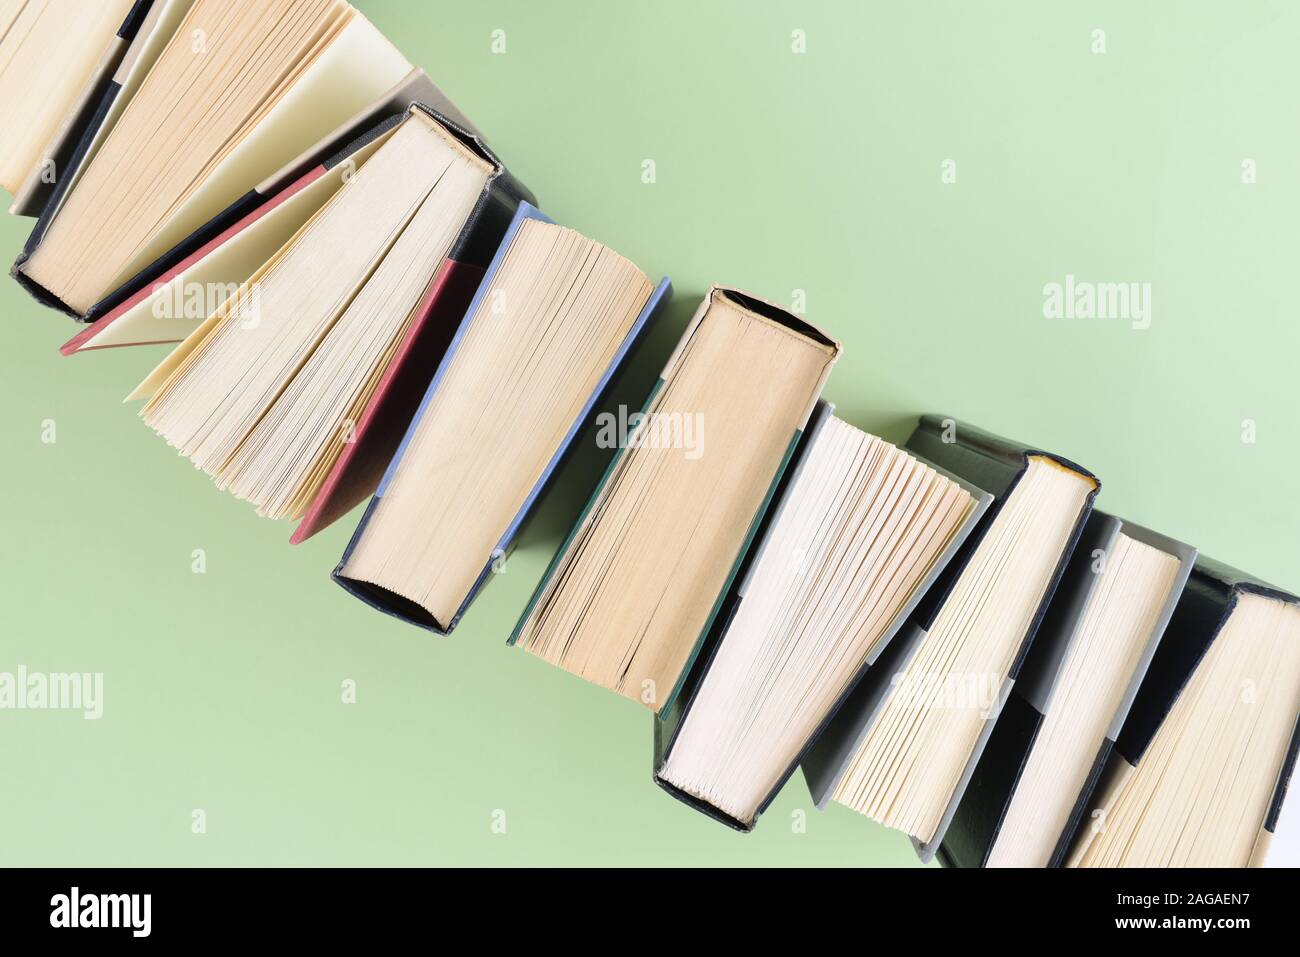 Une ligne de livres debout sur fin tournant à un angle forme un angle de la trame à l'angle opposé, sur un fond vert clair. Banque D'Images